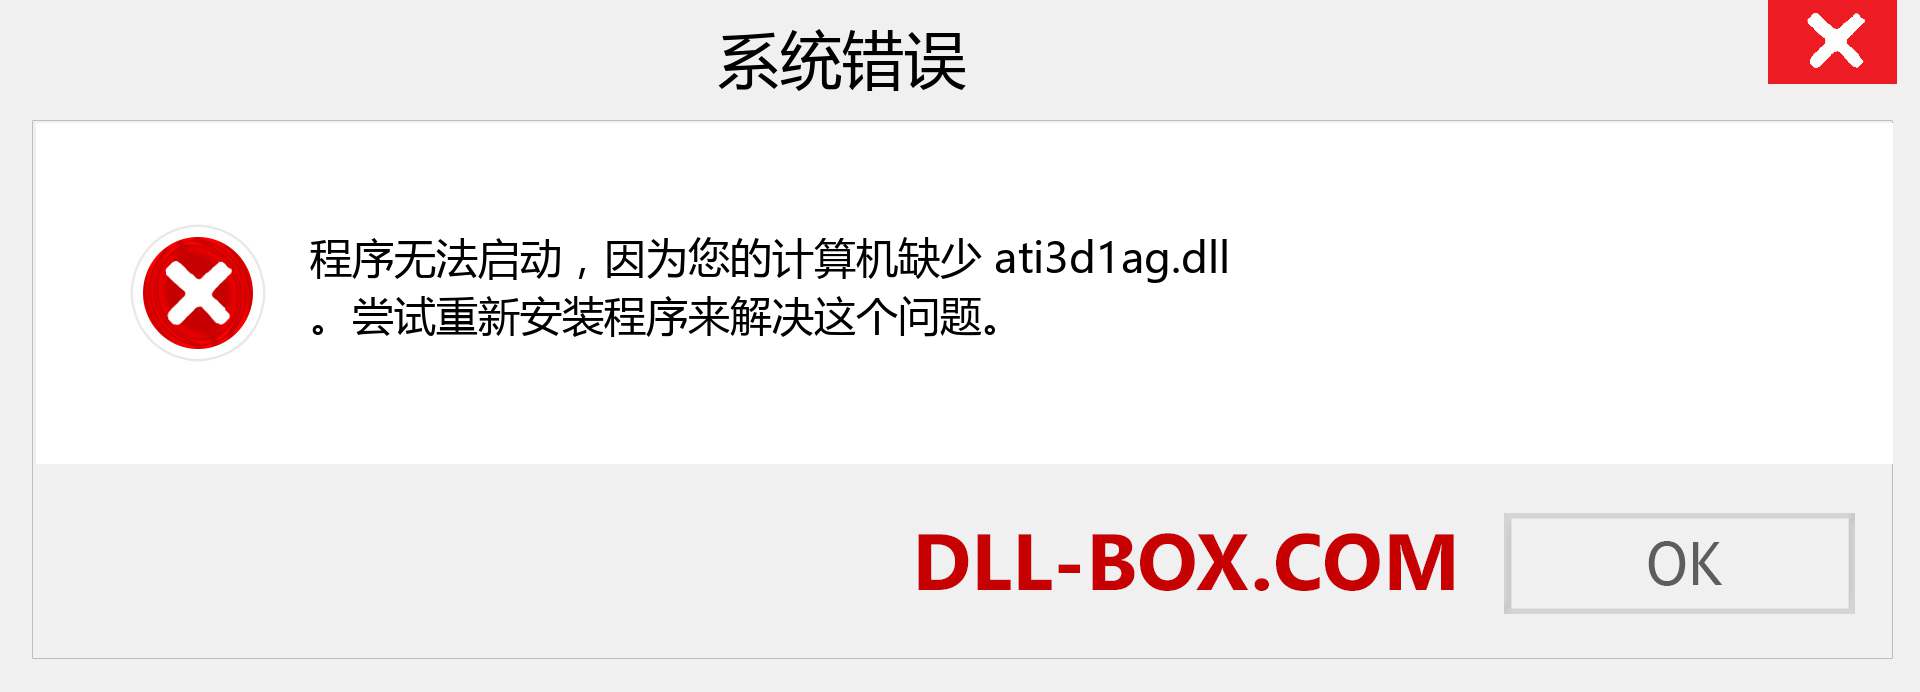 ati3d1ag.dll 文件丢失？。 适用于 Windows 7、8、10 的下载 - 修复 Windows、照片、图像上的 ati3d1ag dll 丢失错误